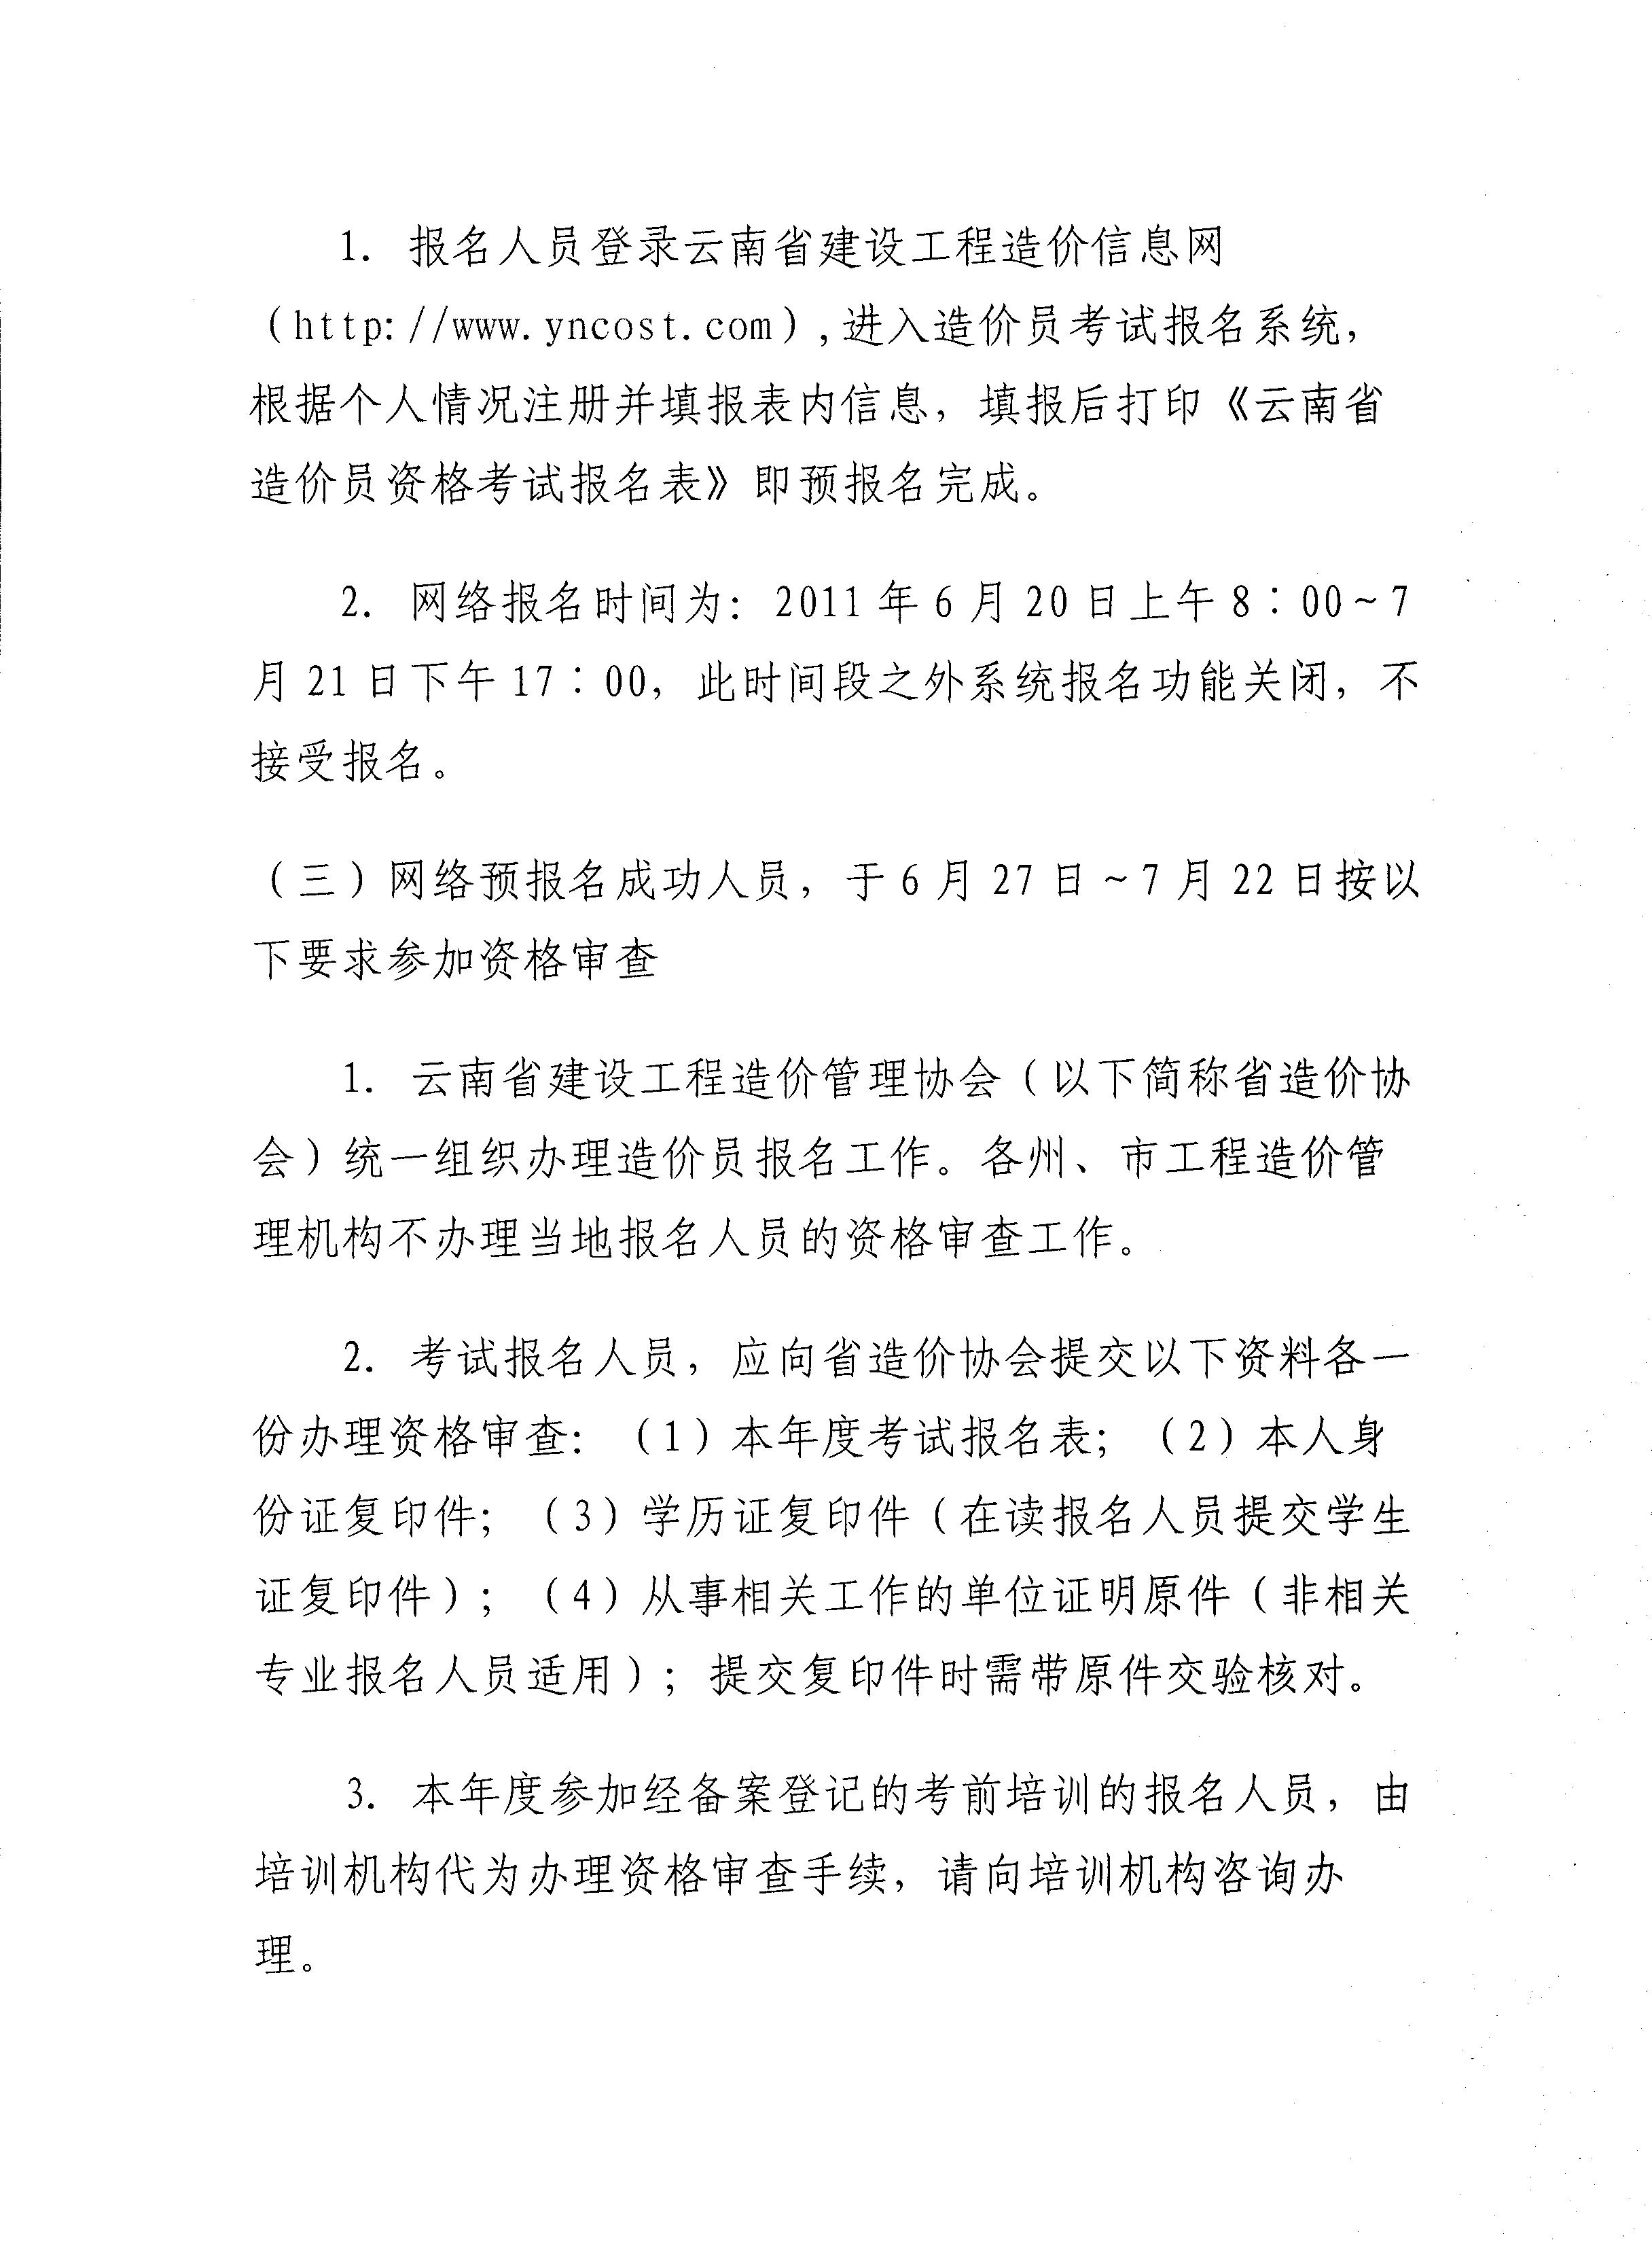 云南省建设工程造价管理协会关于2011年度造价员资格考试报名工作安排的通知